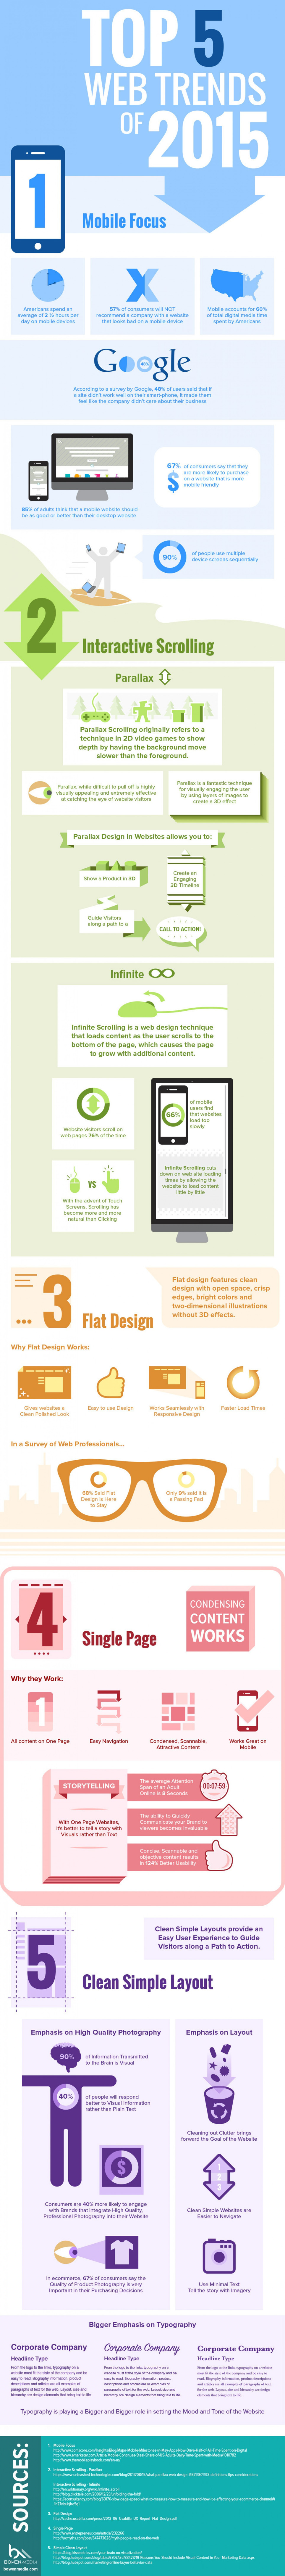 Top 5 Web Design Trends For 2015 | Infographic | WebsiteDesign | Scoop.it